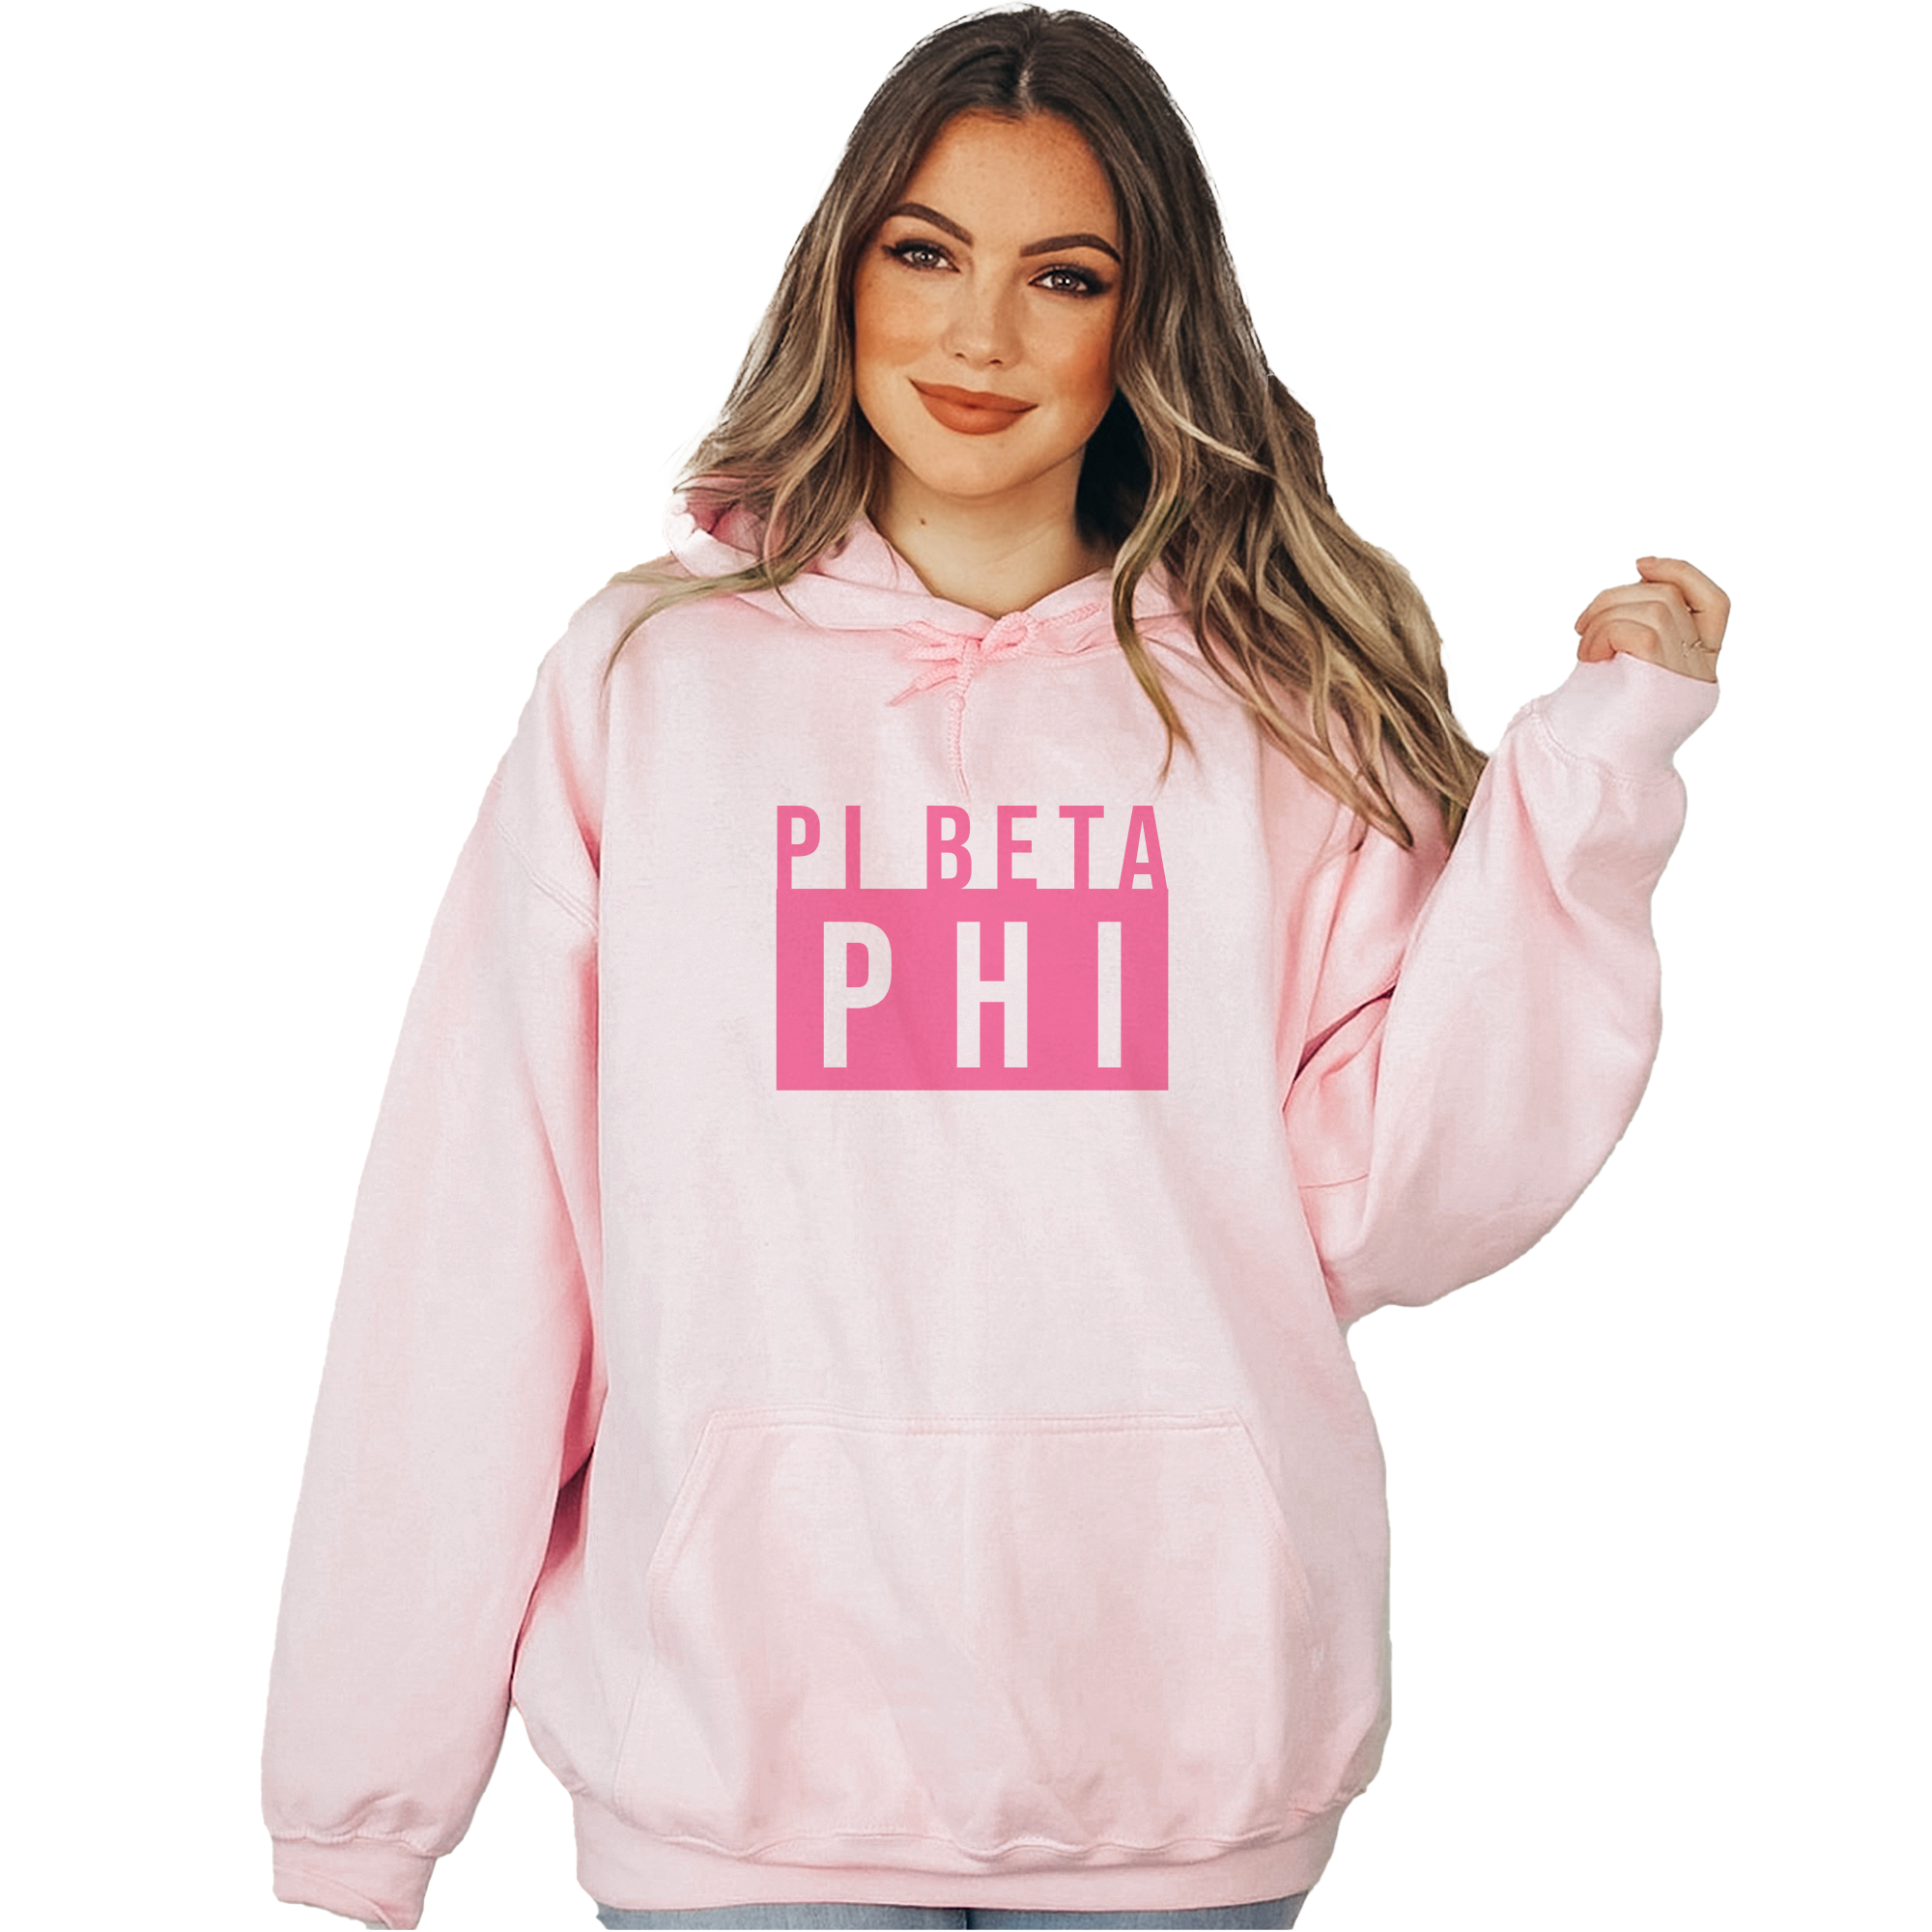 Pi Beta Phi Marquee Hoodie - Pink Hoodie - Go Greek Chic